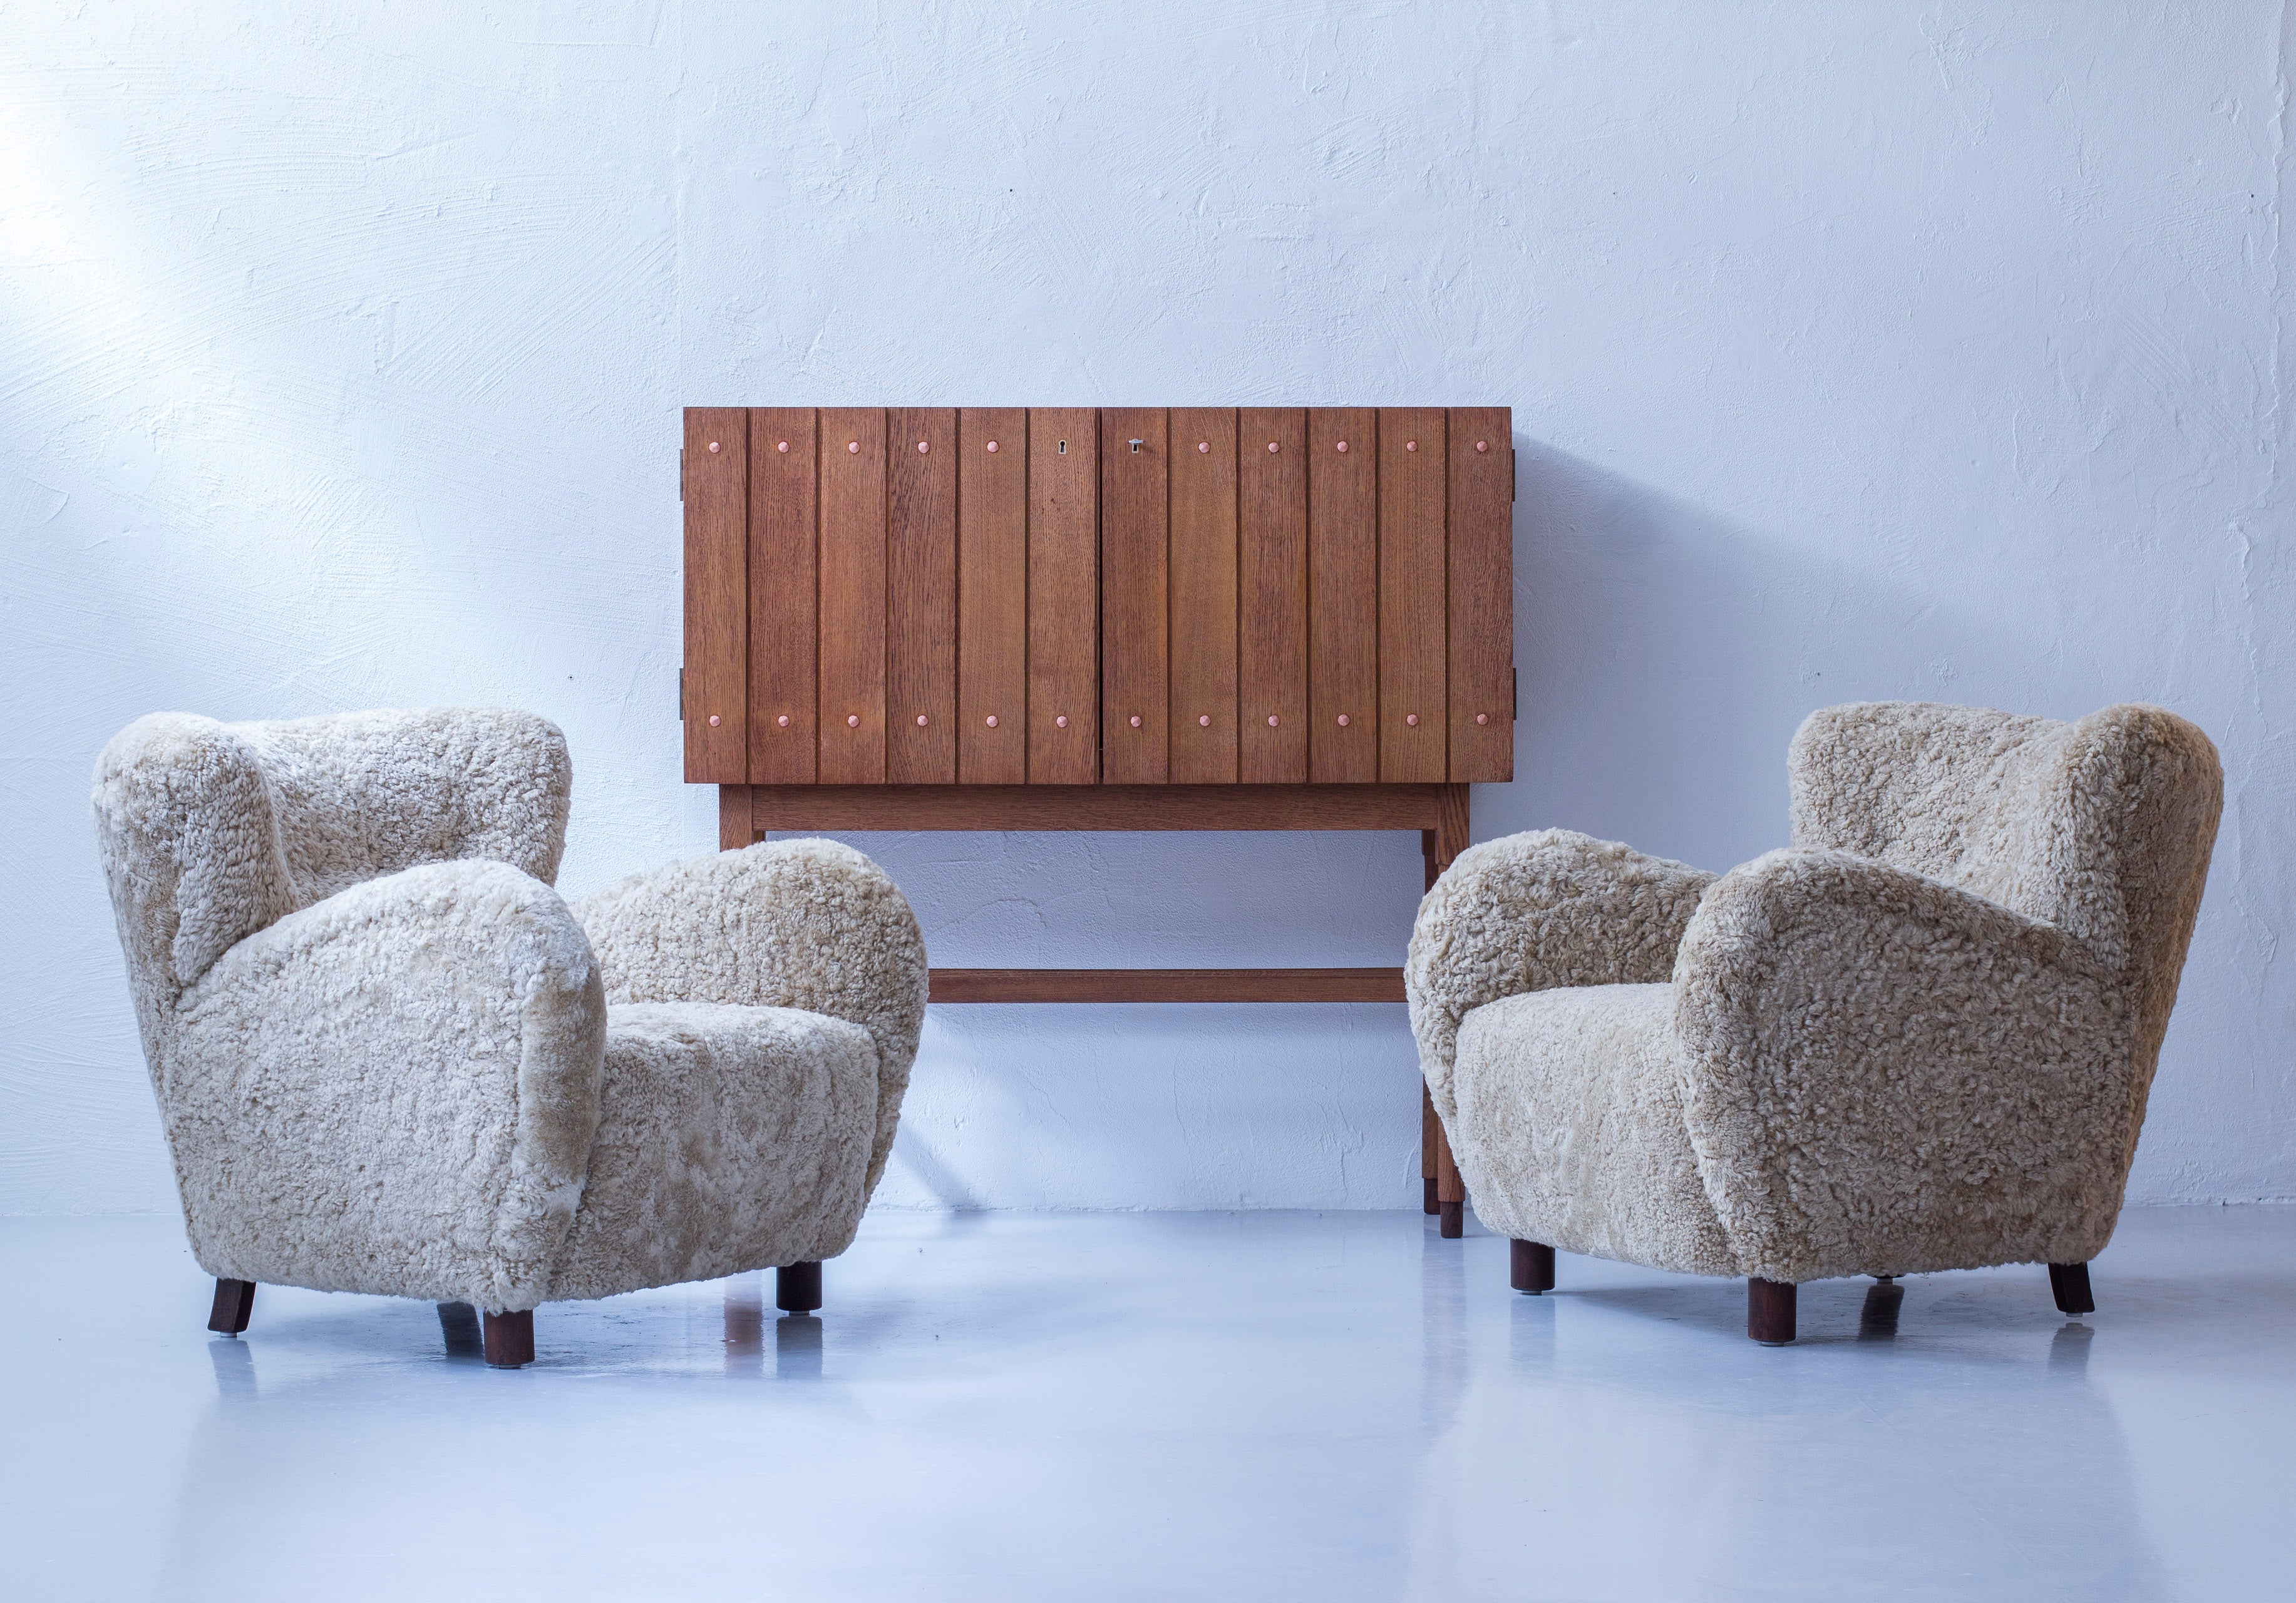 Danish modern sheepskin chairs